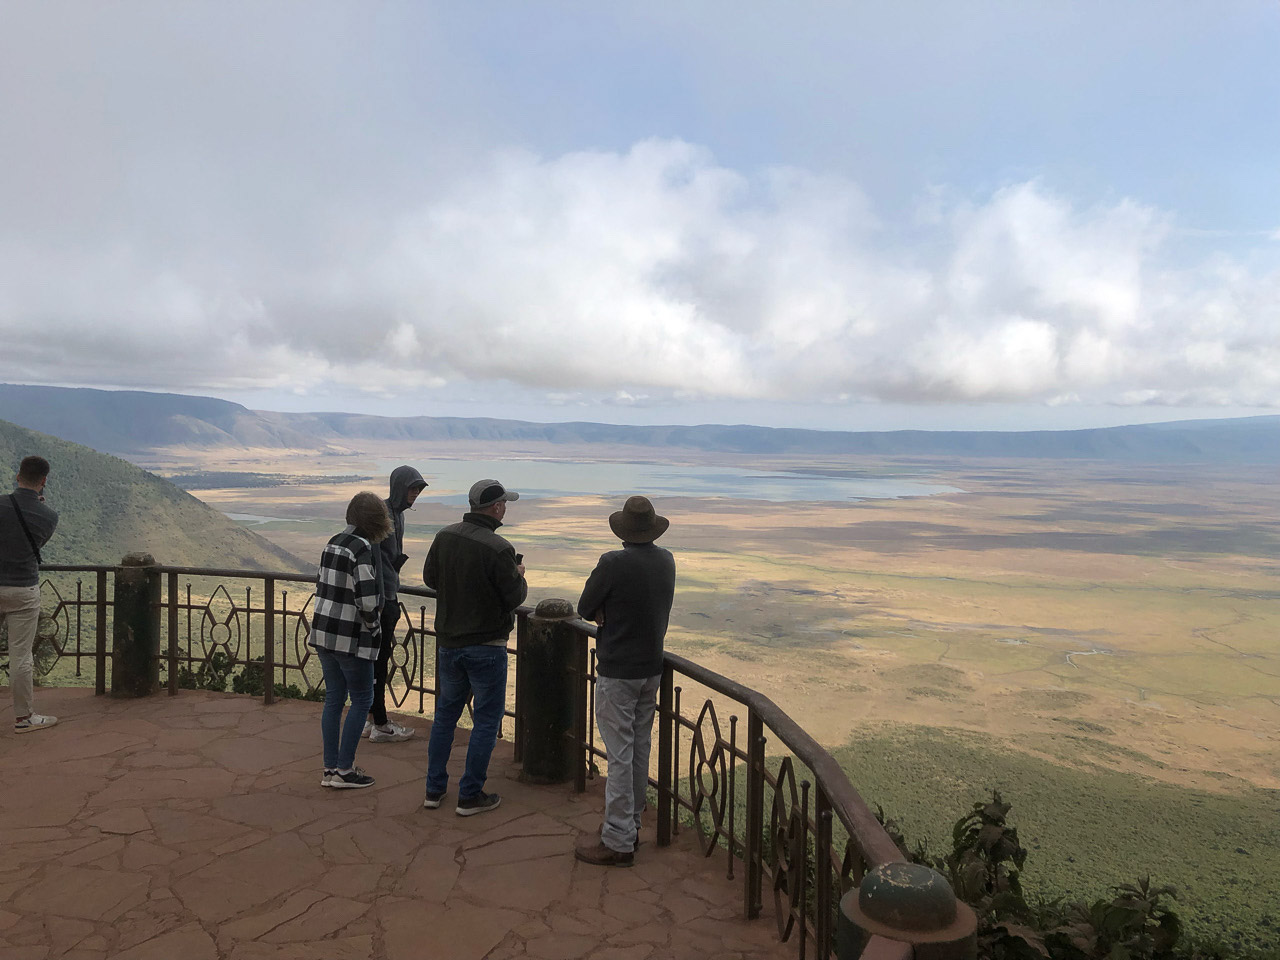 Safari Tanzania rondreizen ter inspiratie. Bij het uitzichtpunt van Ngororongoro krater kijken mensen en hun gids de Ngorongoro krater in. Een panoramisch uitzicht over de krater.